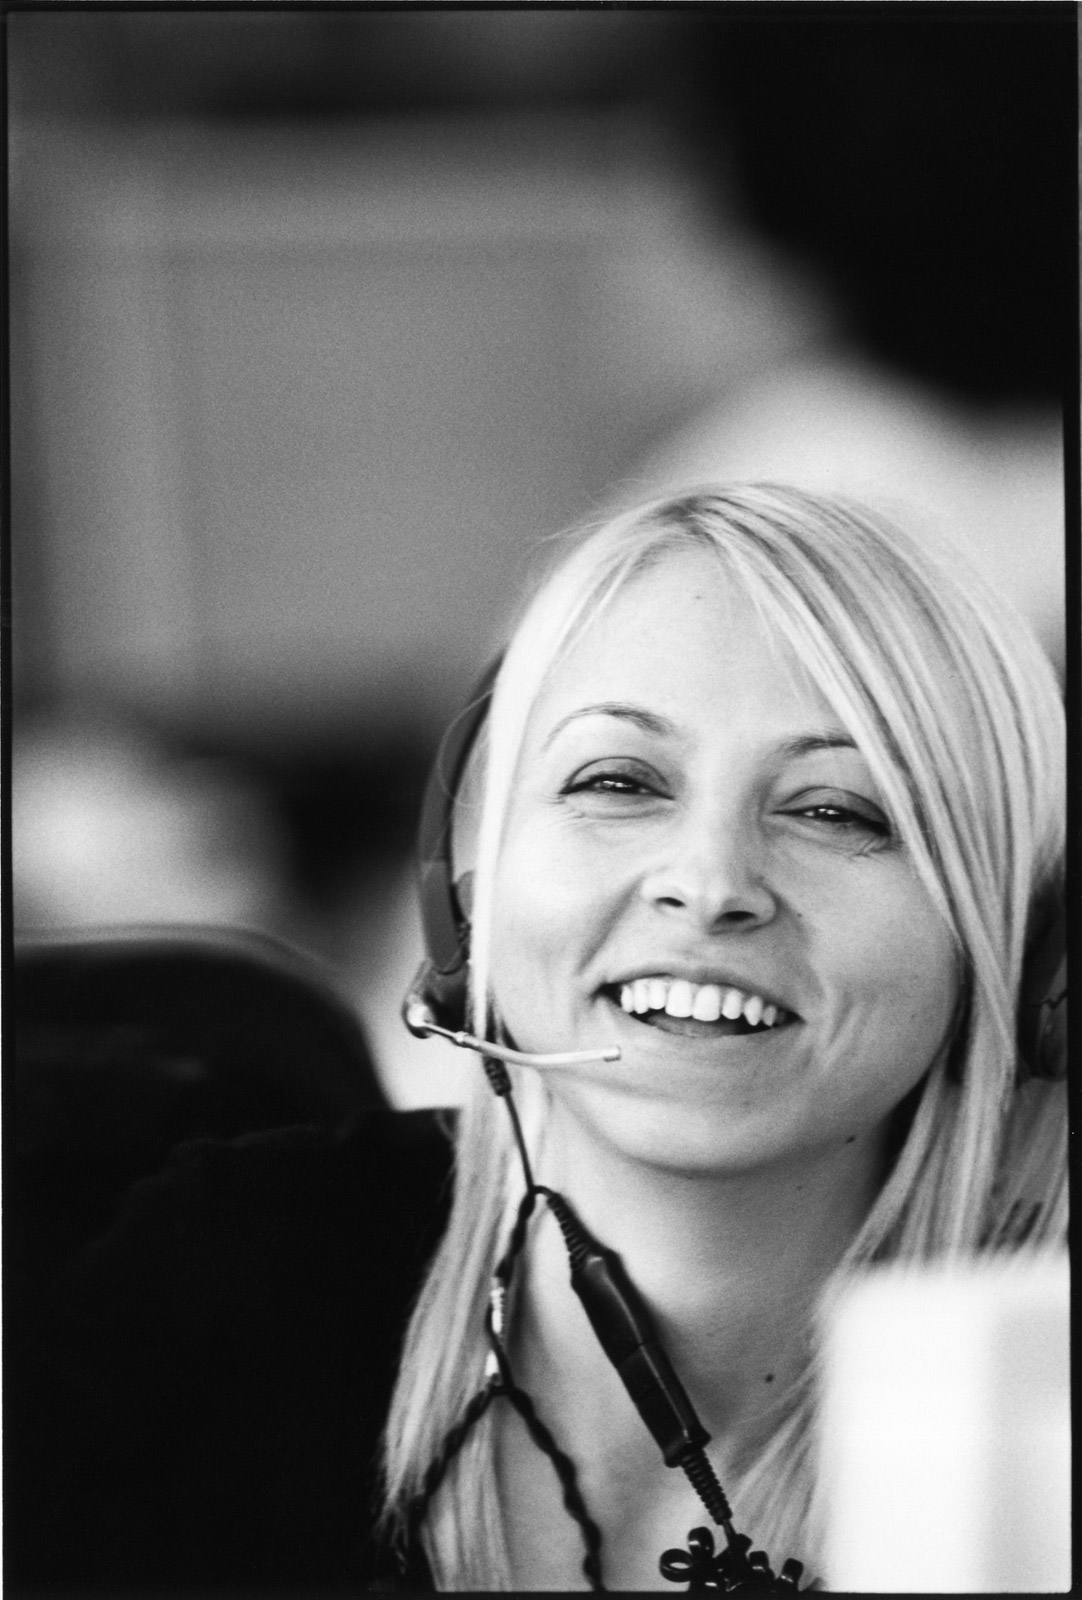 Smiling assistant, Paris, 2005